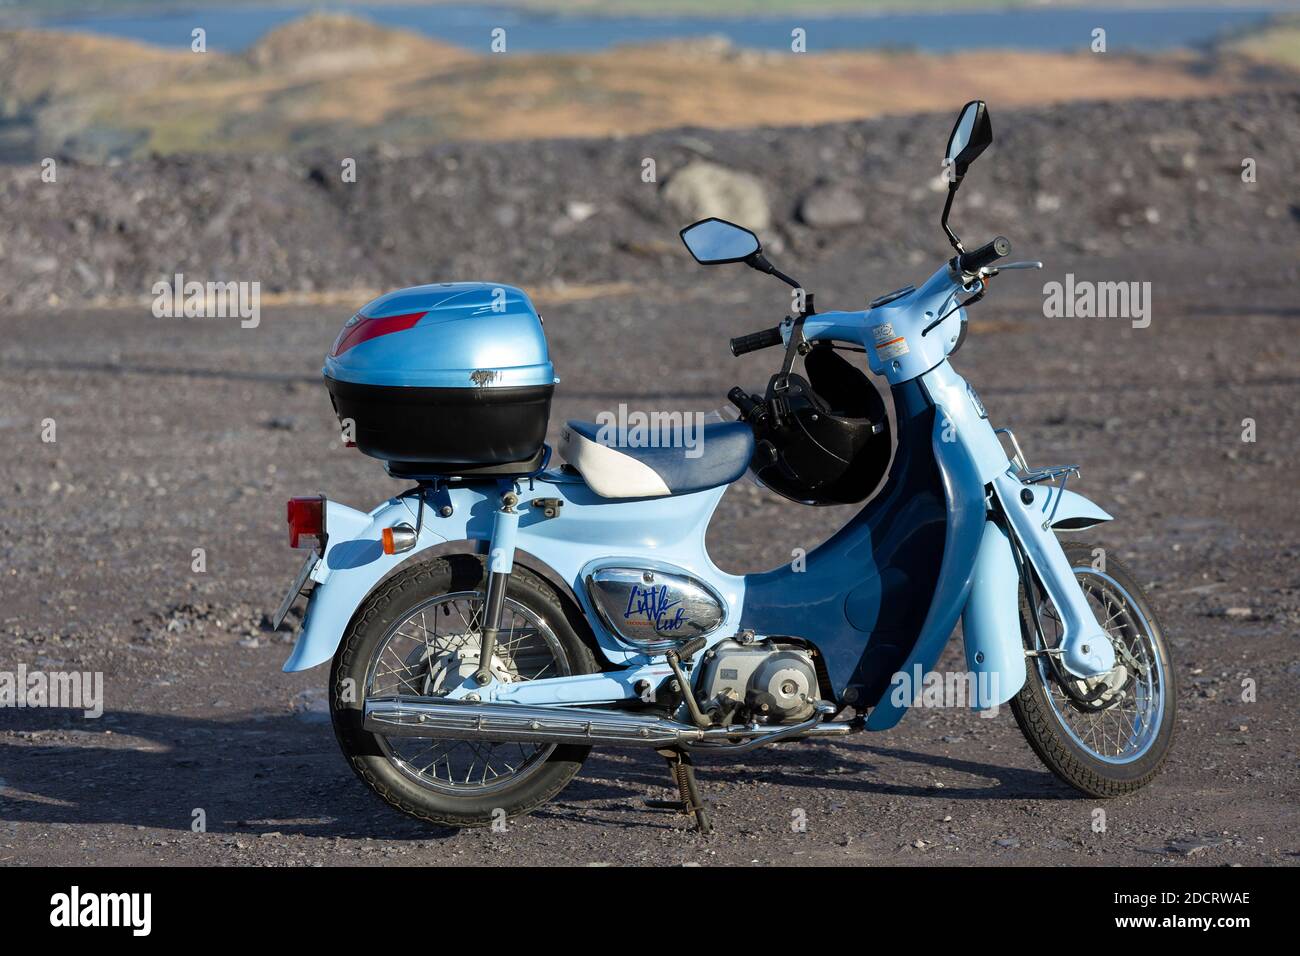 Moto honda 70 Banque de photographies et d'images à haute résolution - Alamy